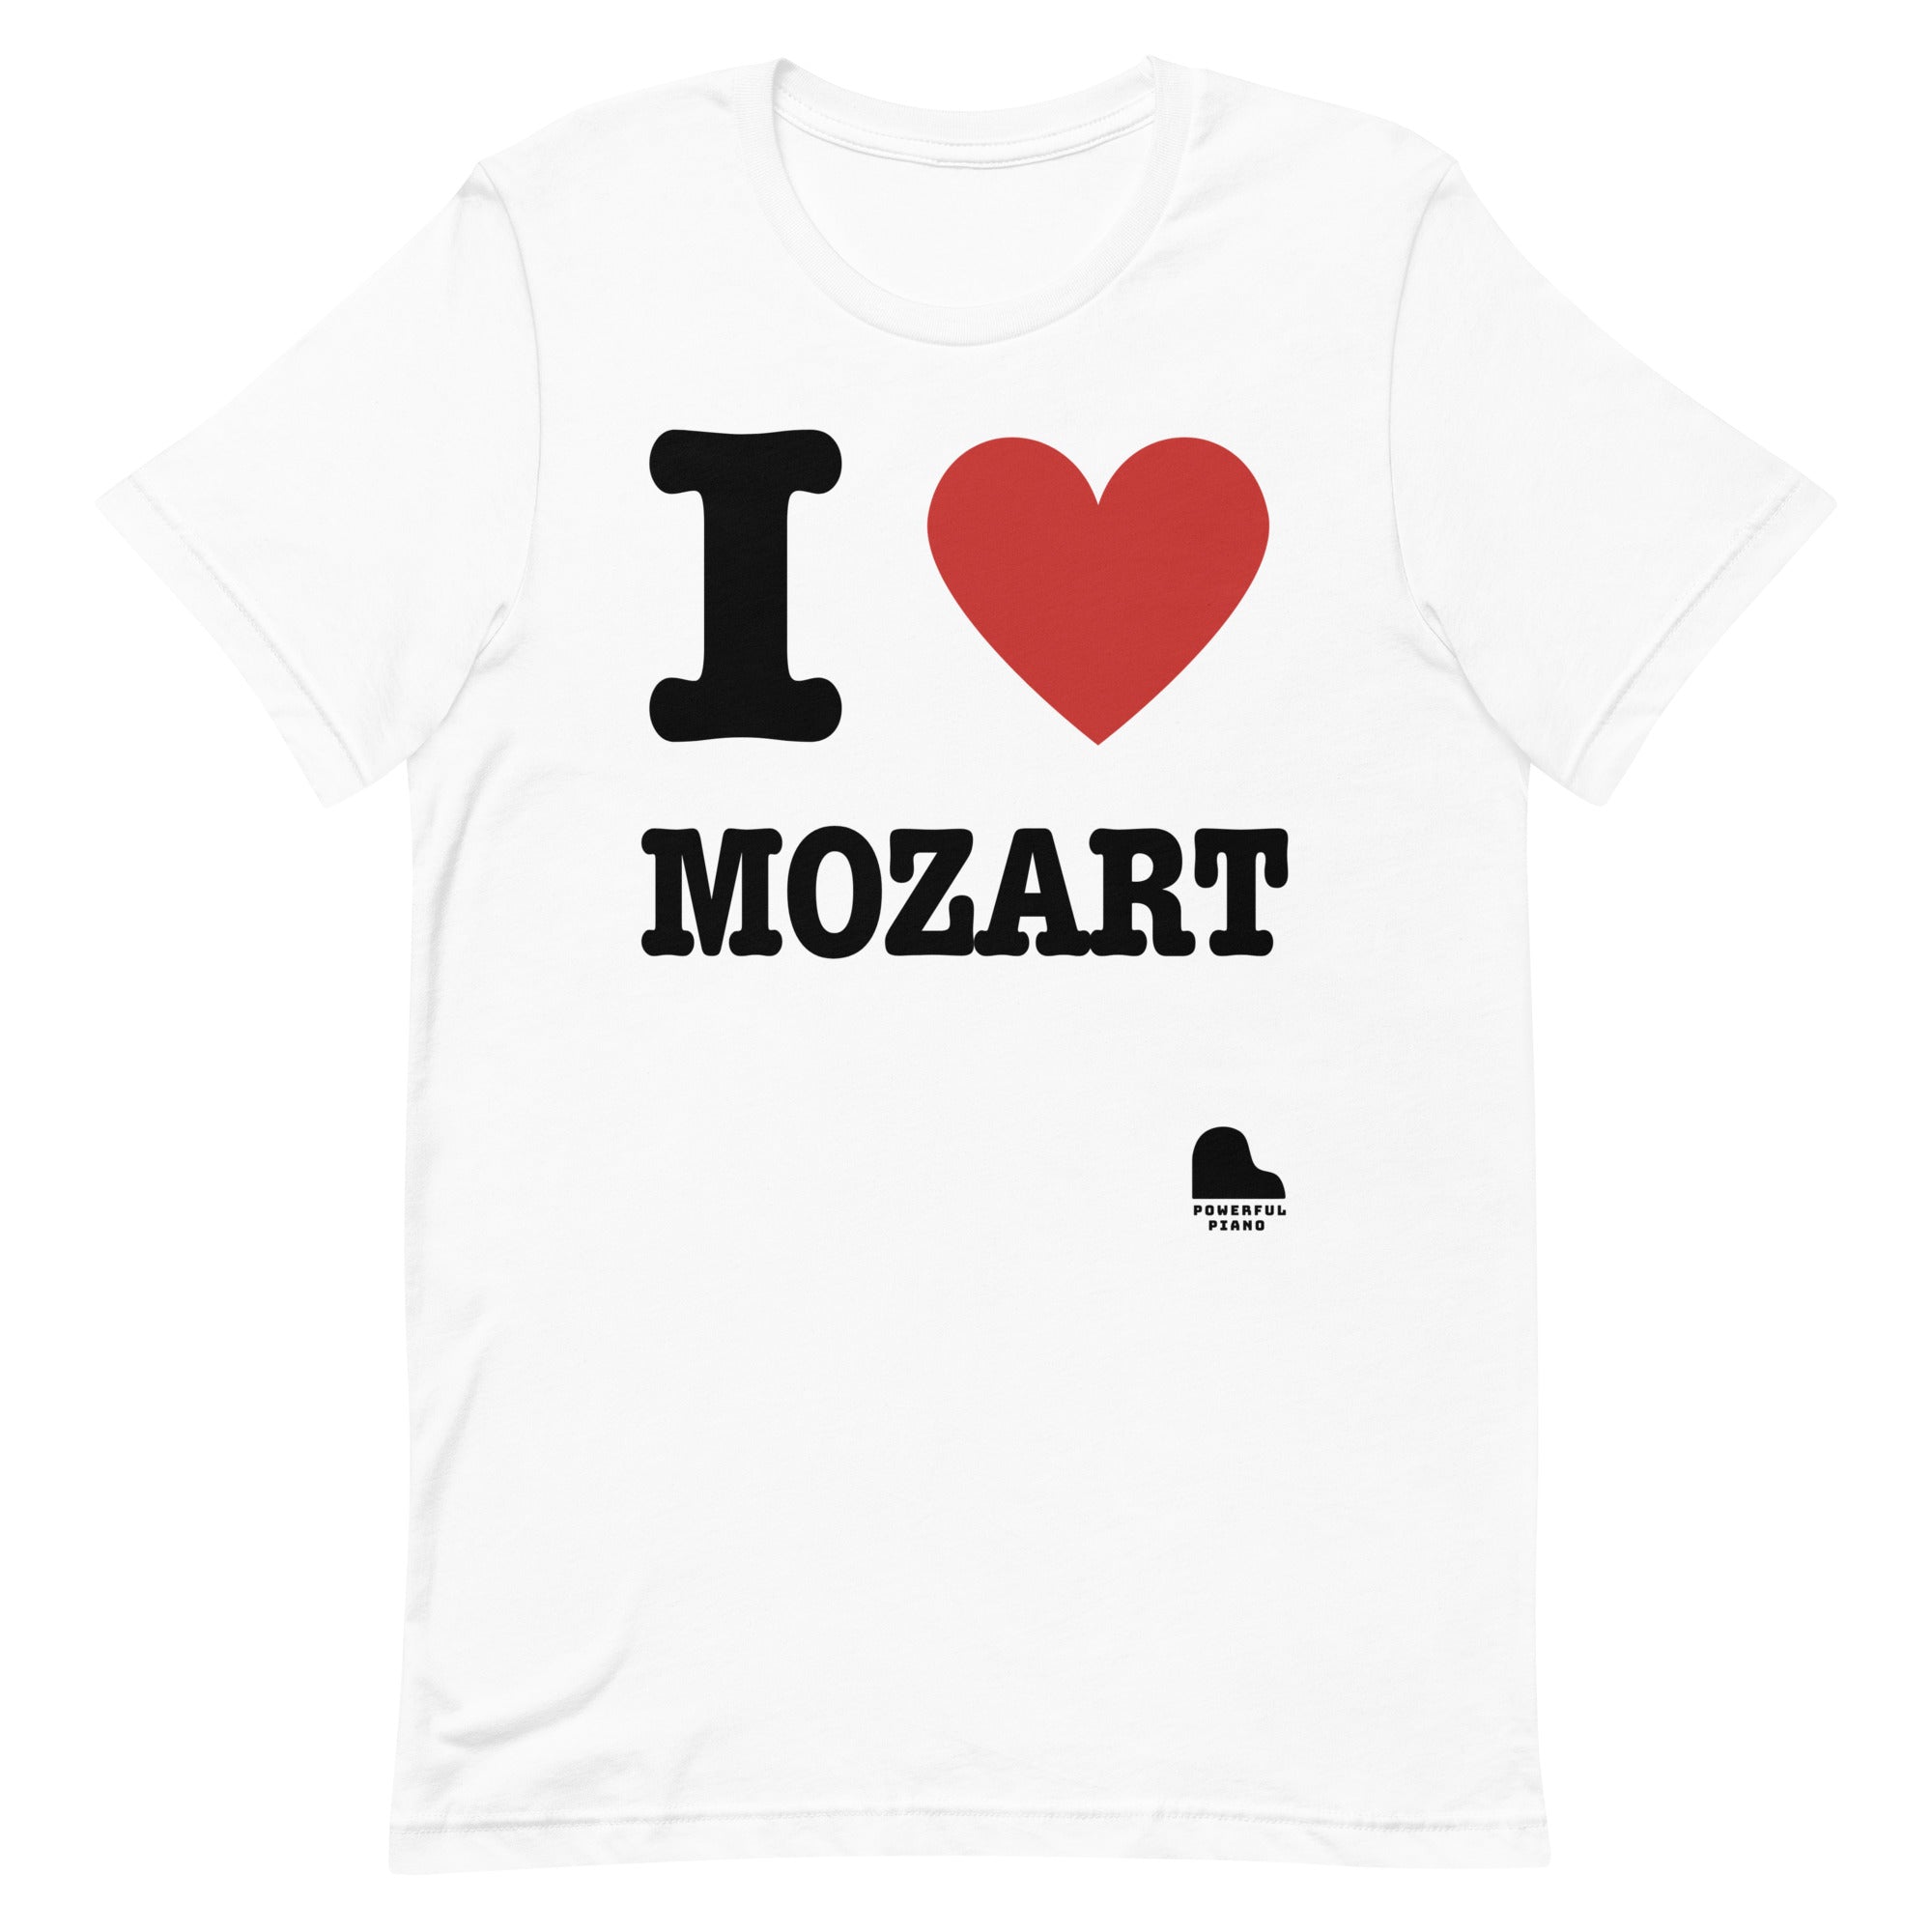 I <3 Mozart T-Shirt